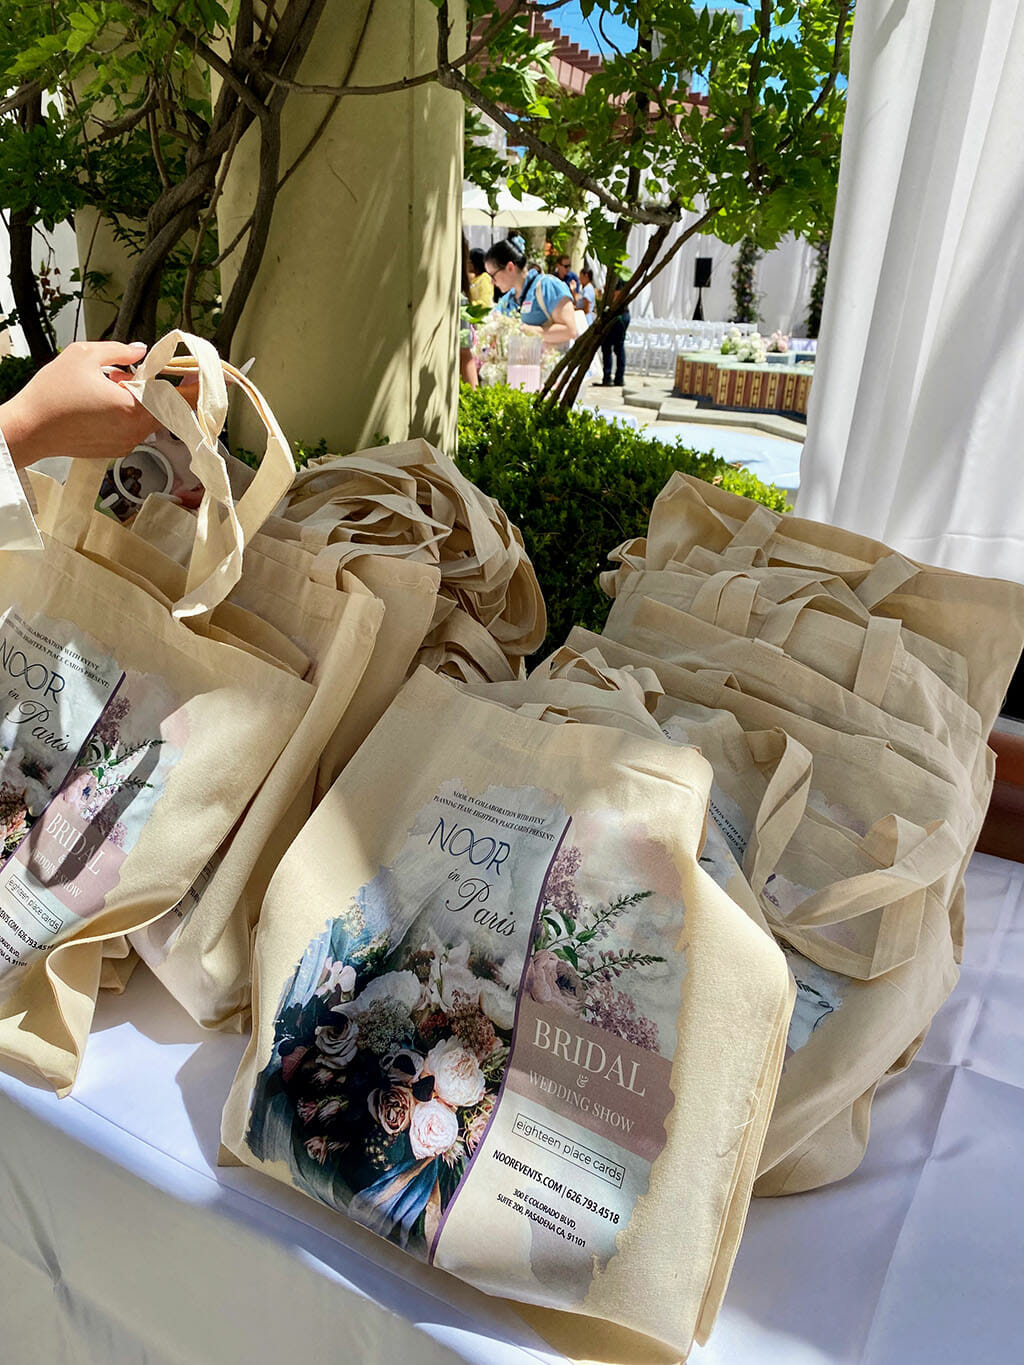 noor in paris wedding show free gift bags